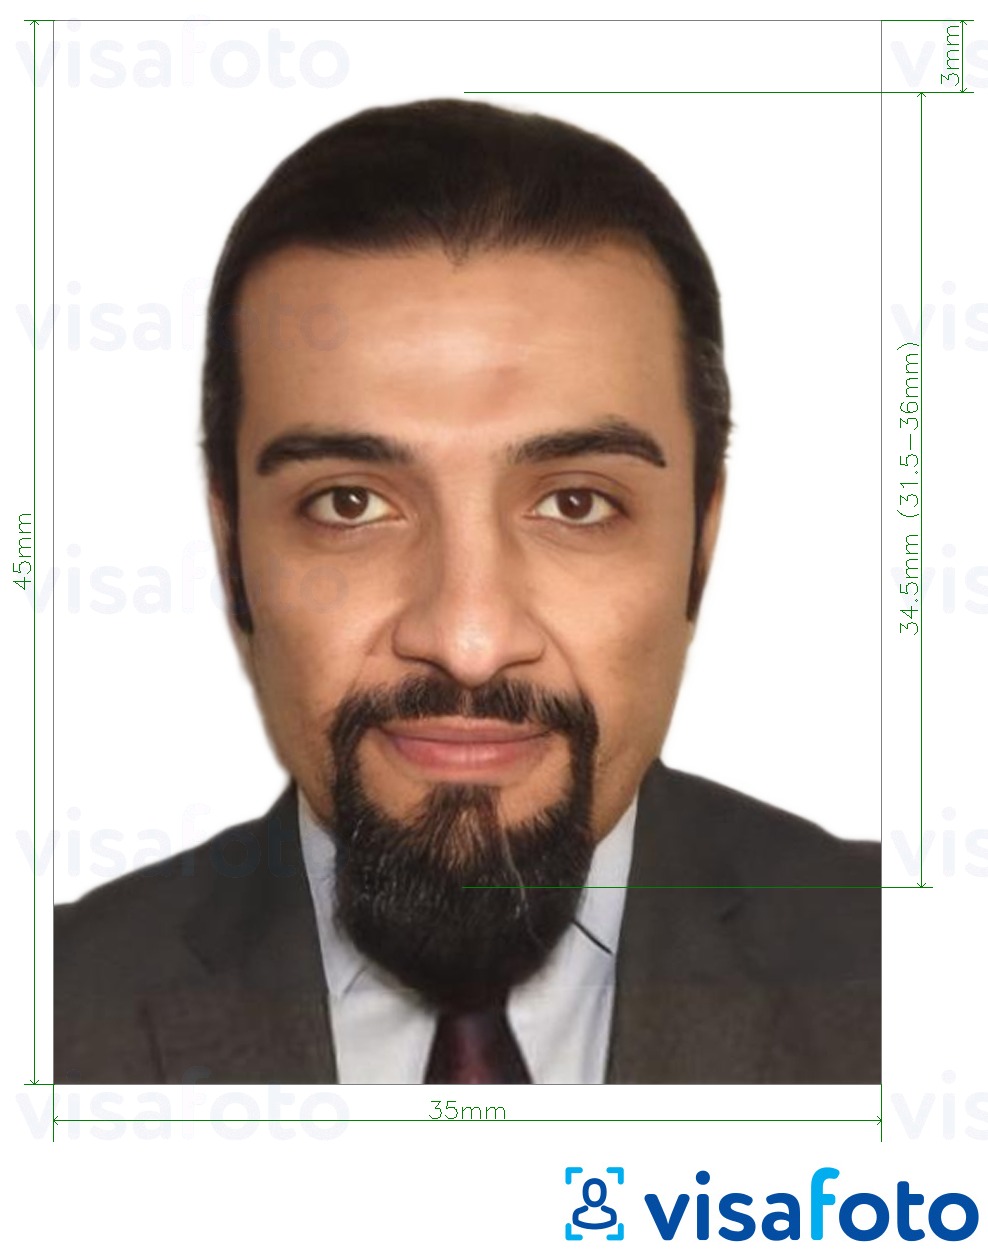  Etioopia e-viisa Internetis 35x45 mm (3.5x4.5 cm) fotonäidis koos täpse infoga mõõtude kohta.